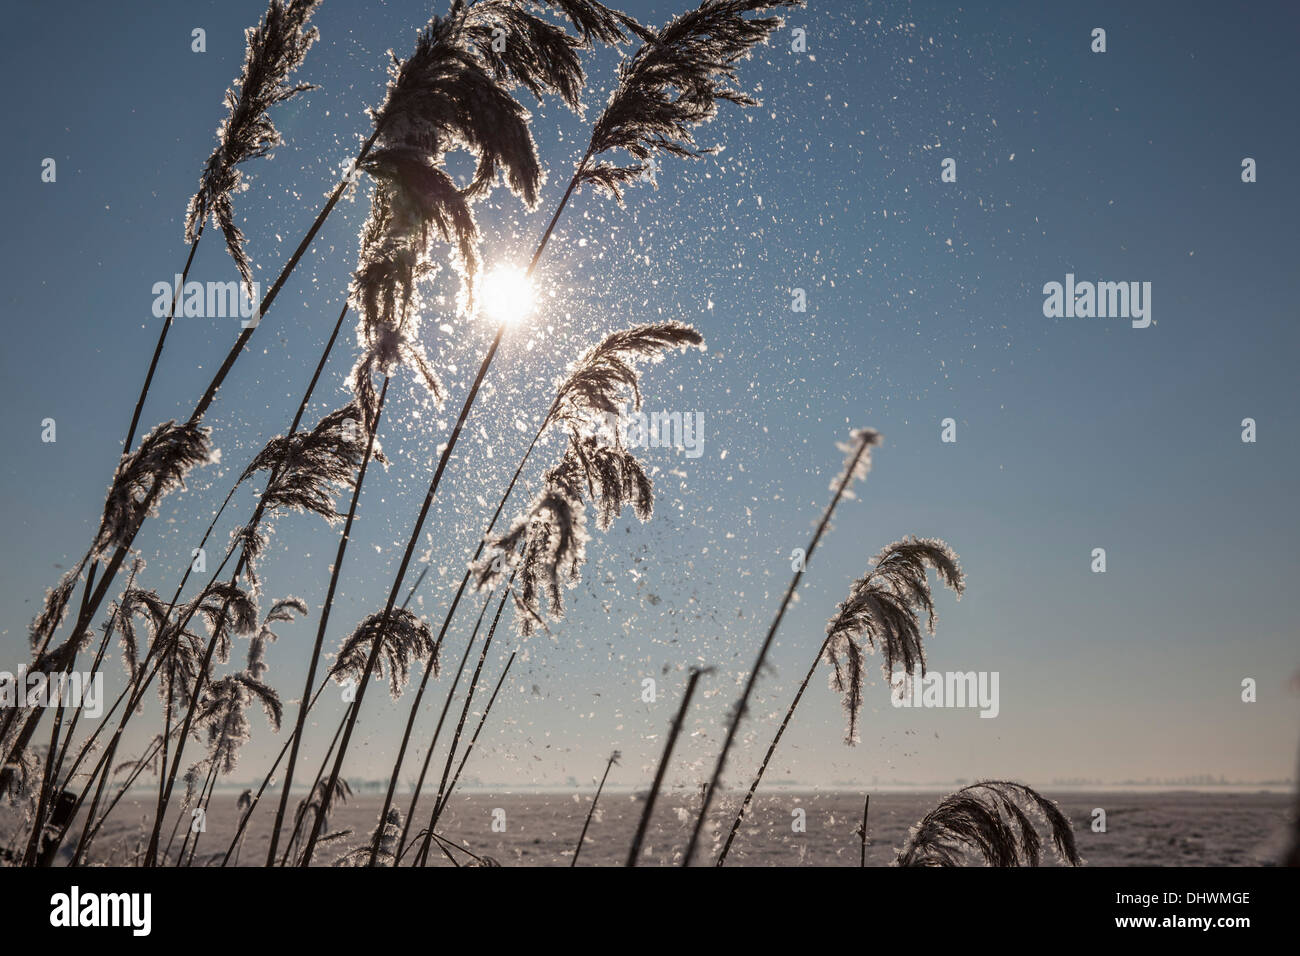 Pays-bas, Zegveld, des cristaux de glace sur reed plume. des saules. L'hiver Banque D'Images